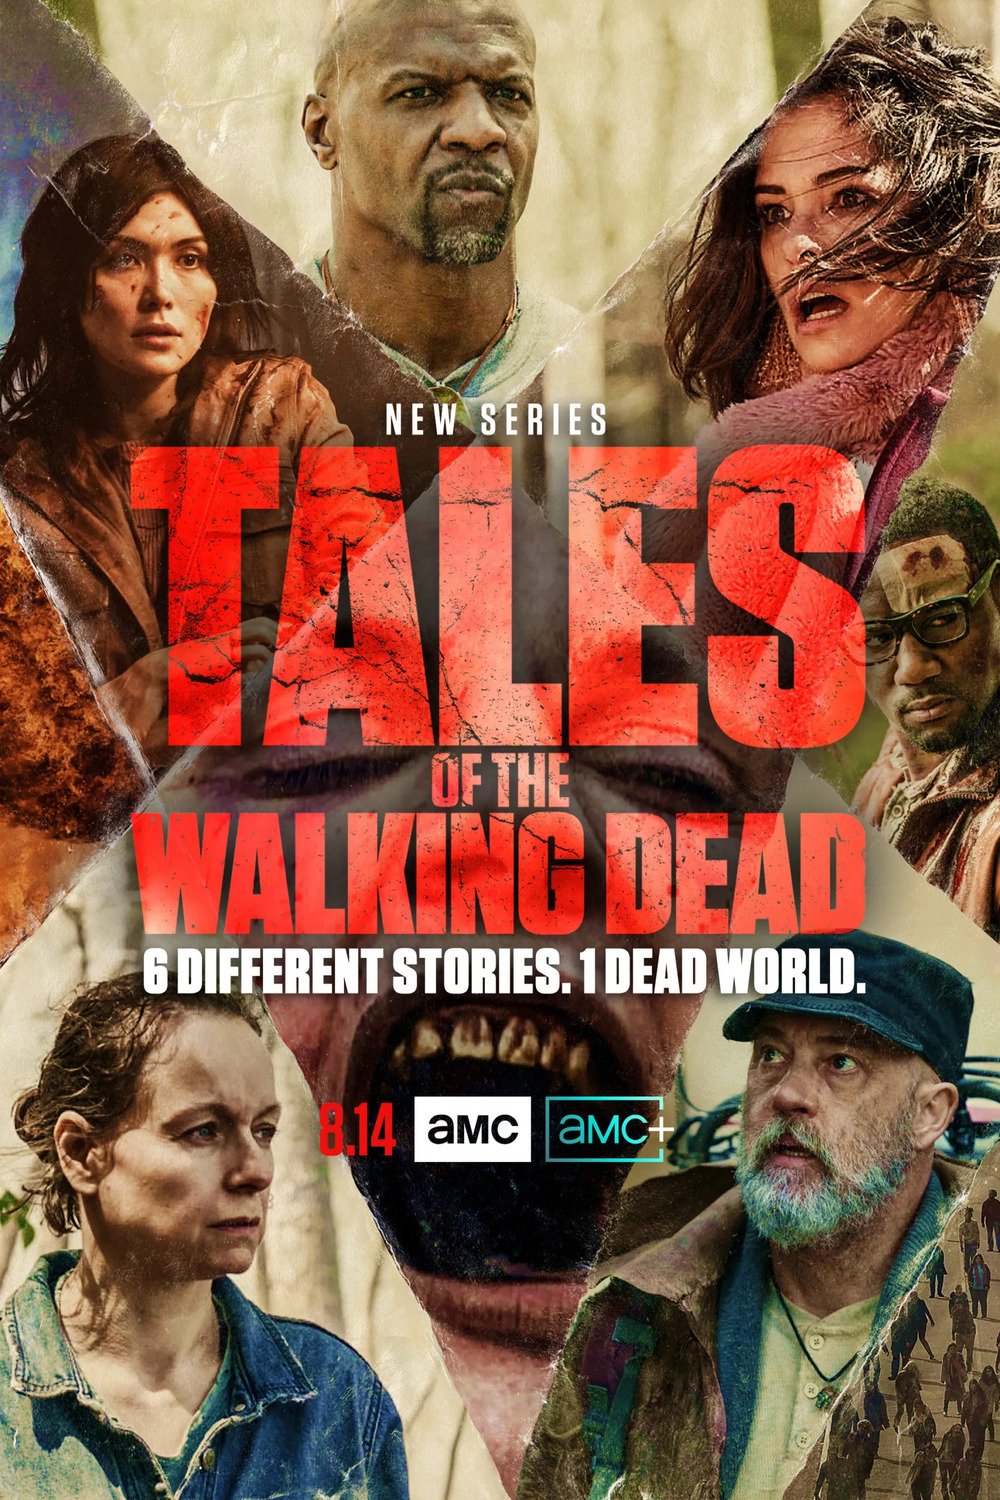 Tales of The Walking Dead - Saison 1